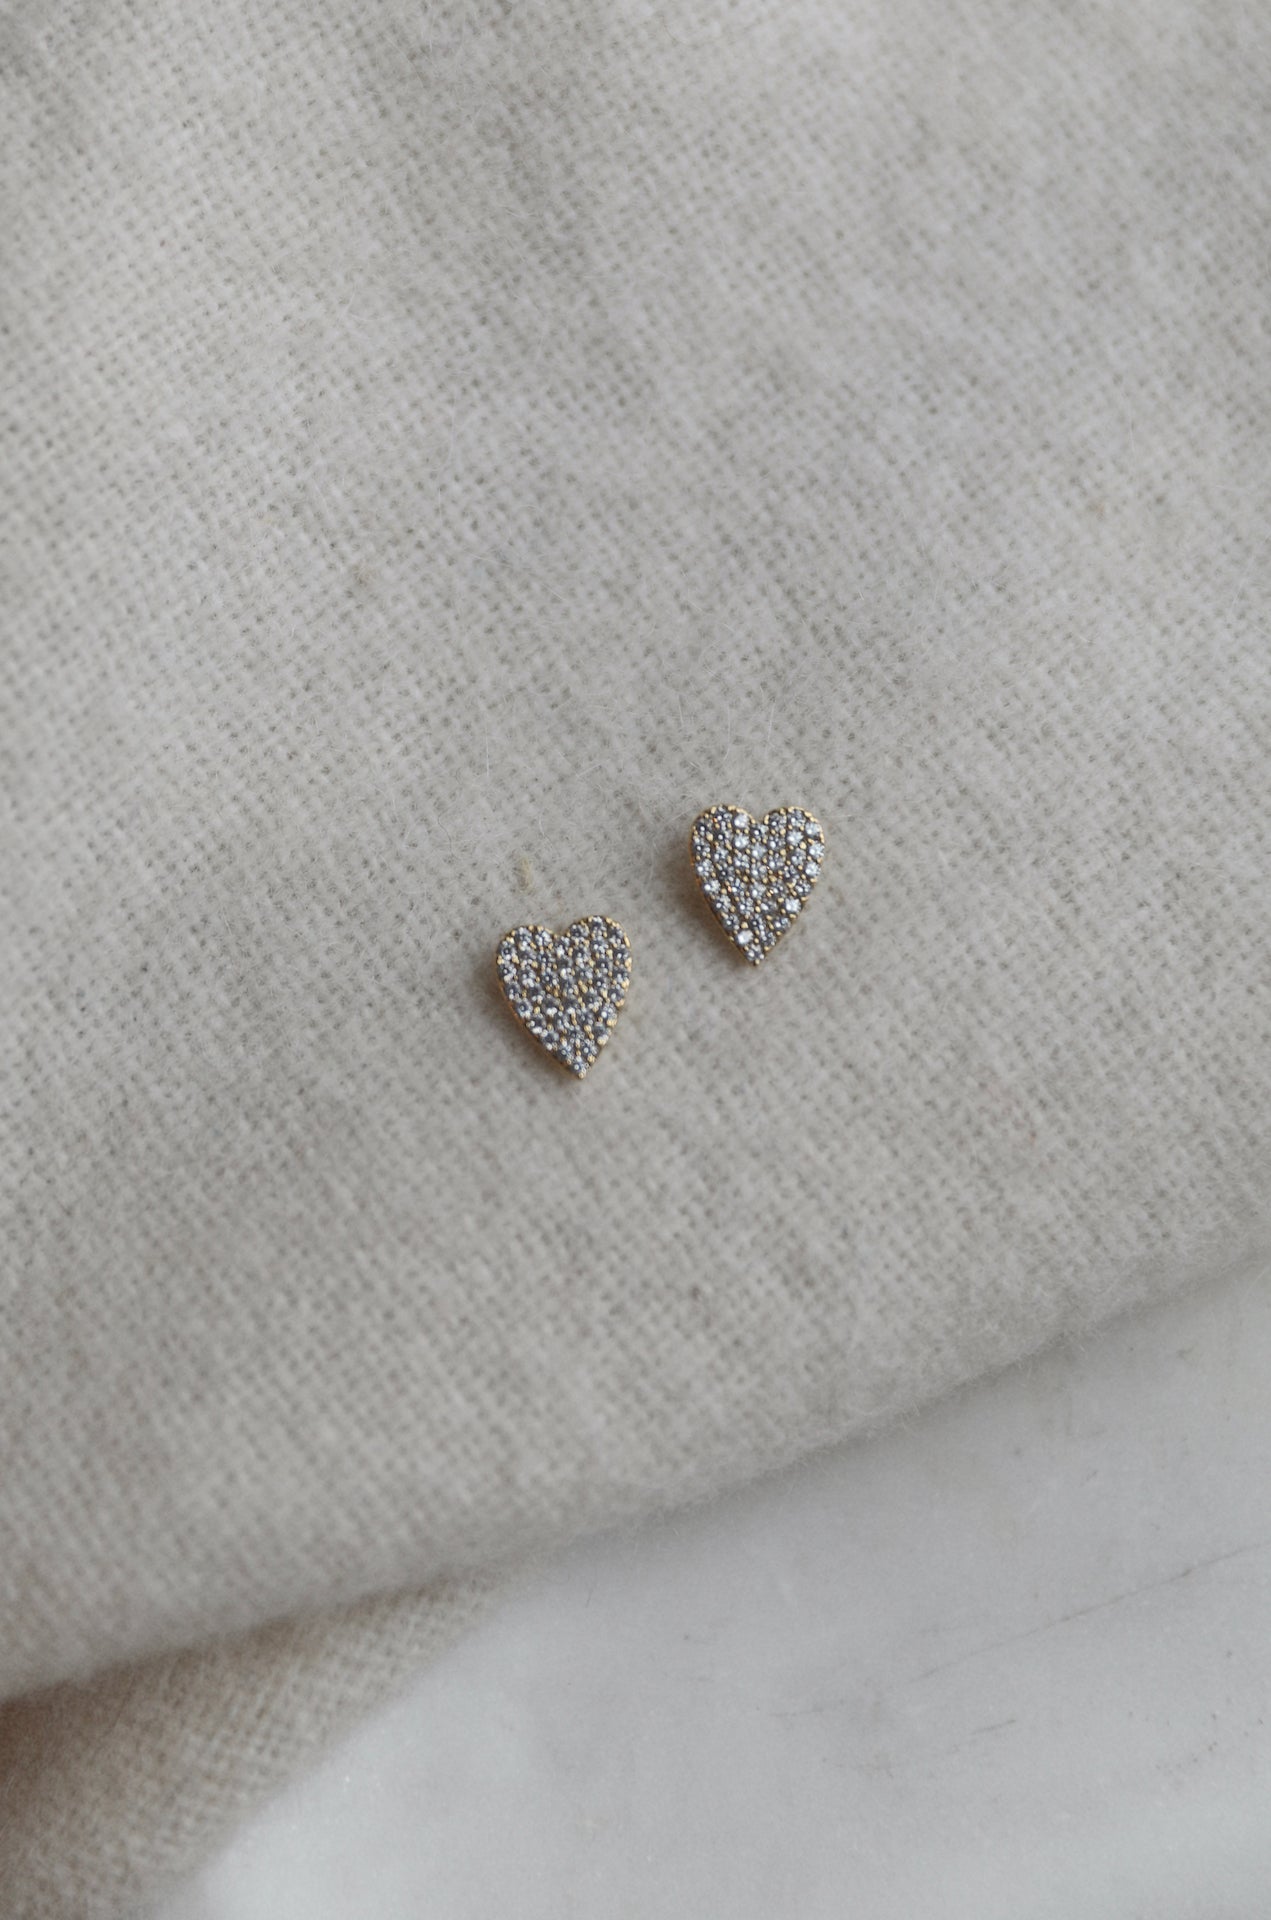 14k Gold Diamond Heart Earrings